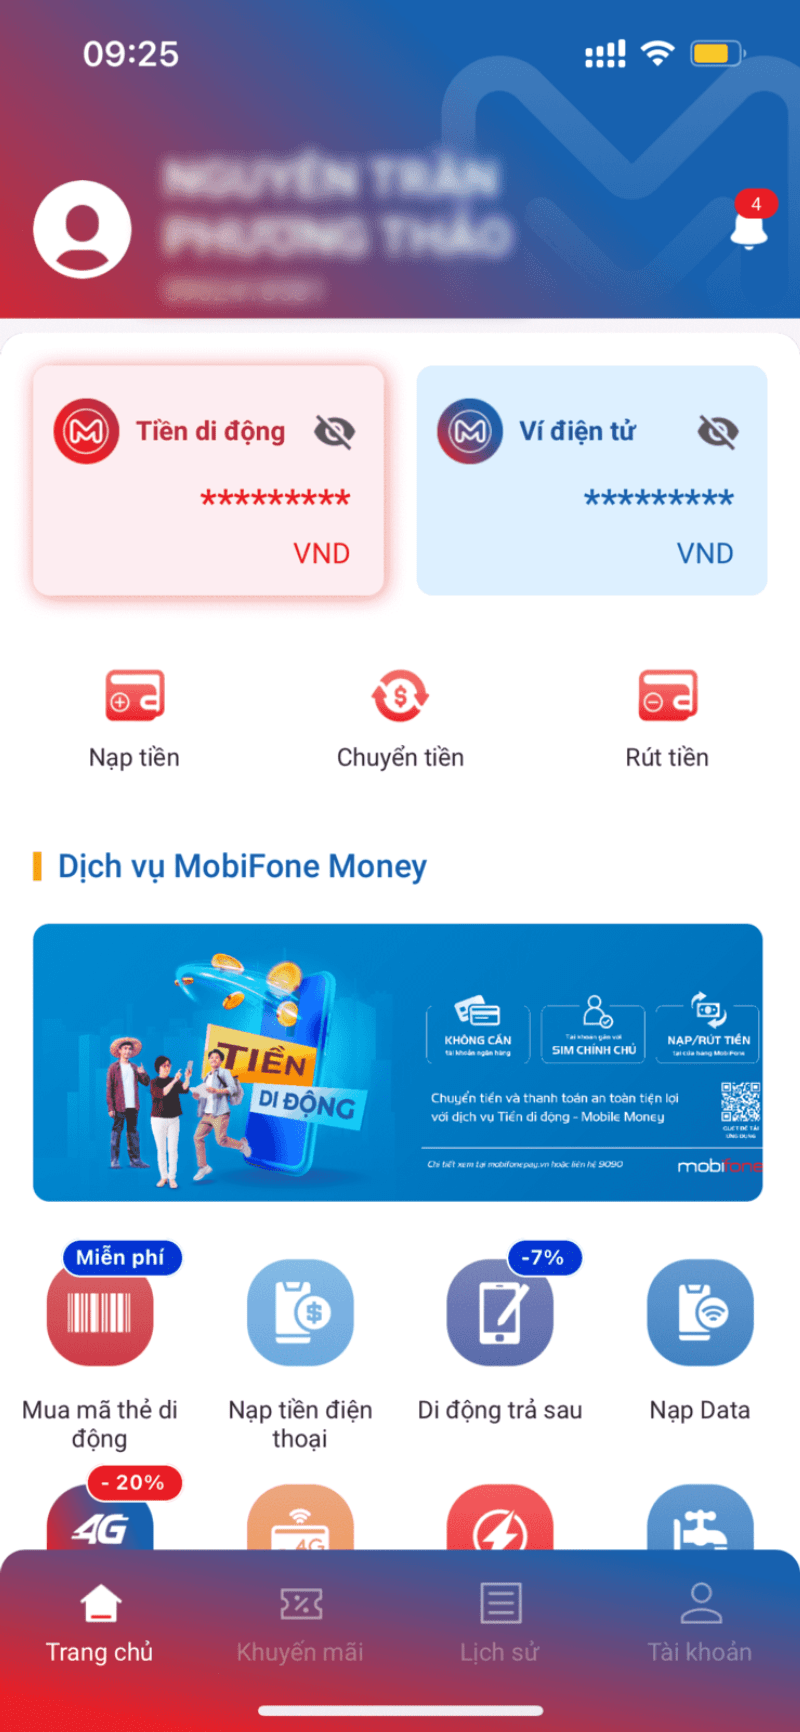 nạp tiền vào tài khoản tiền di động MobiFone Money